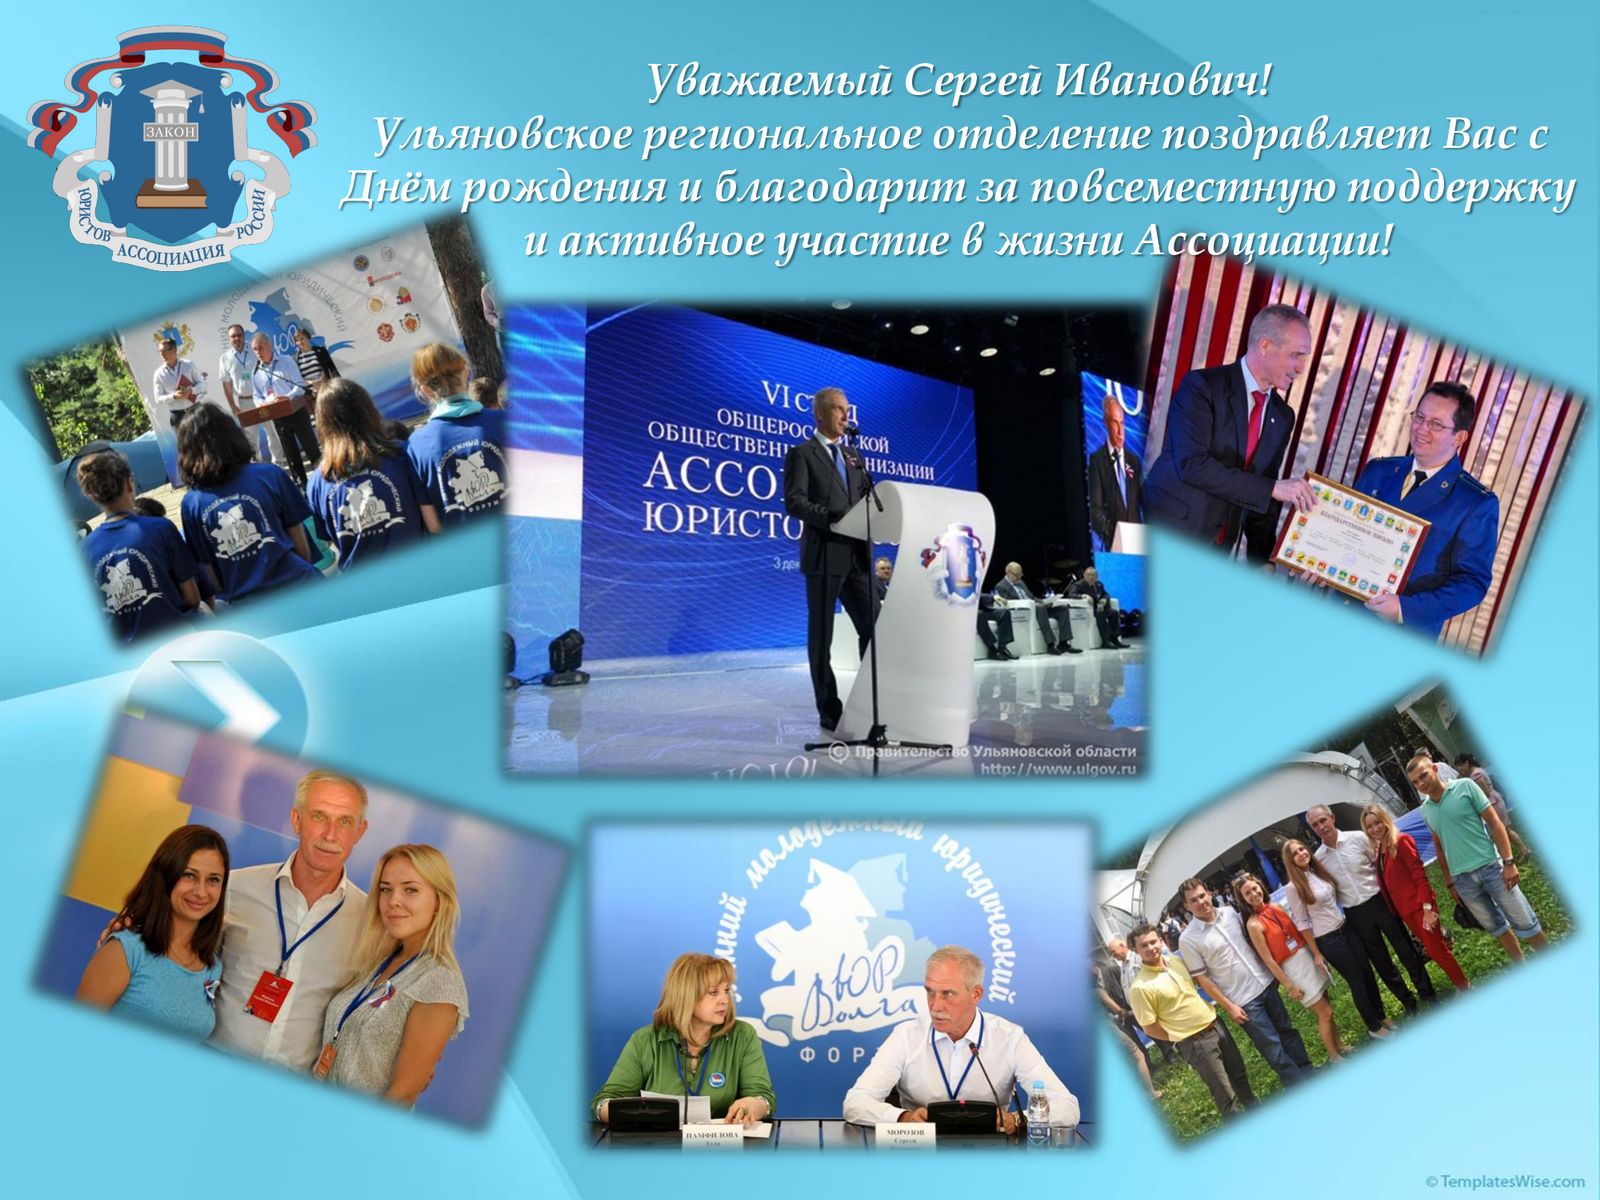 Поздравляем с днём рождения Председателя Совета Ульяновского регионального отделения Сергея Ивановича Морозова!